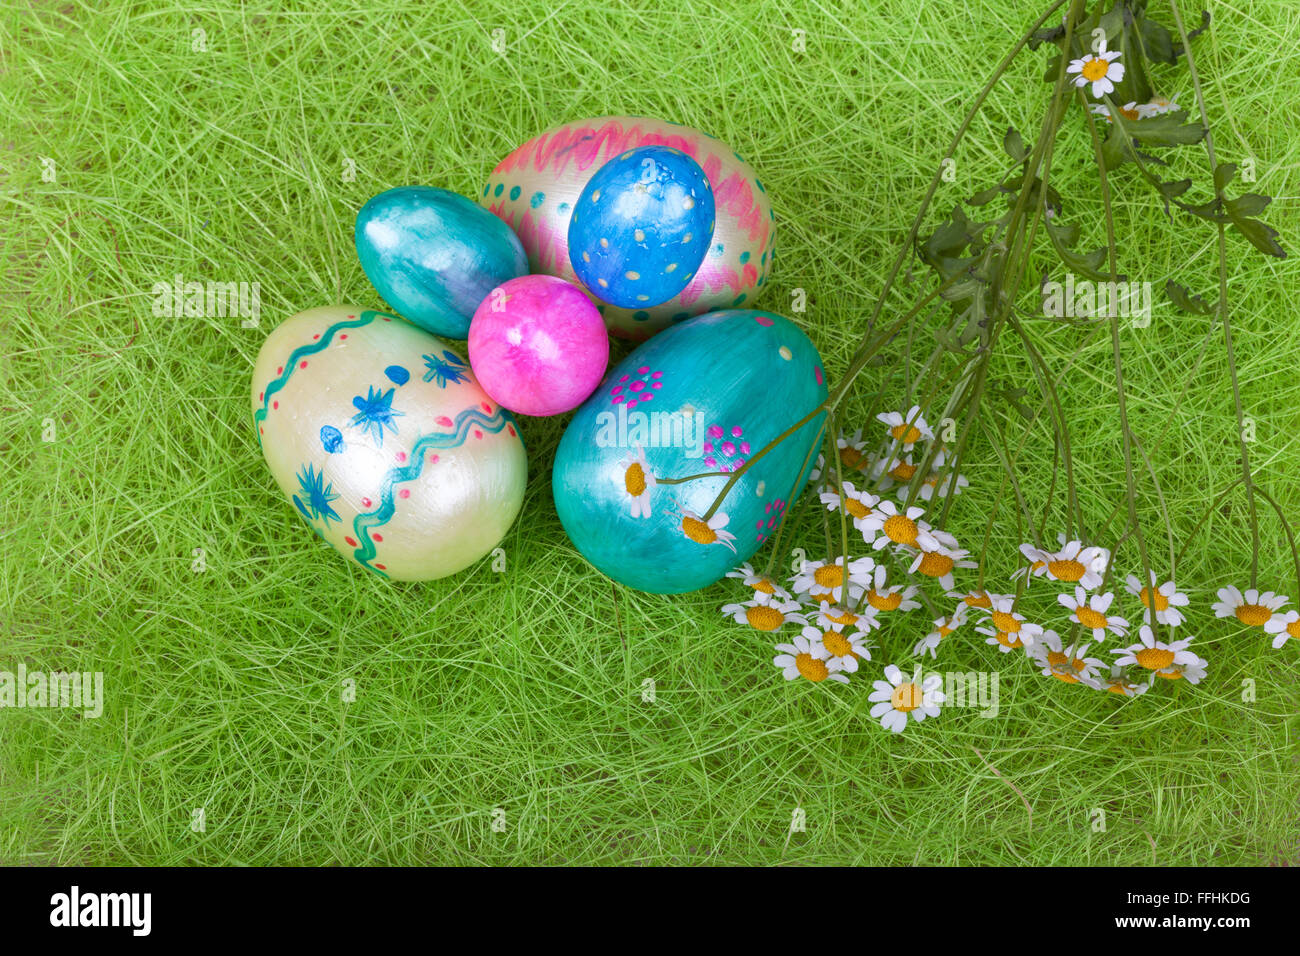 Fresche bianche margherite con le uova di pasqua su erba verde Foto Stock